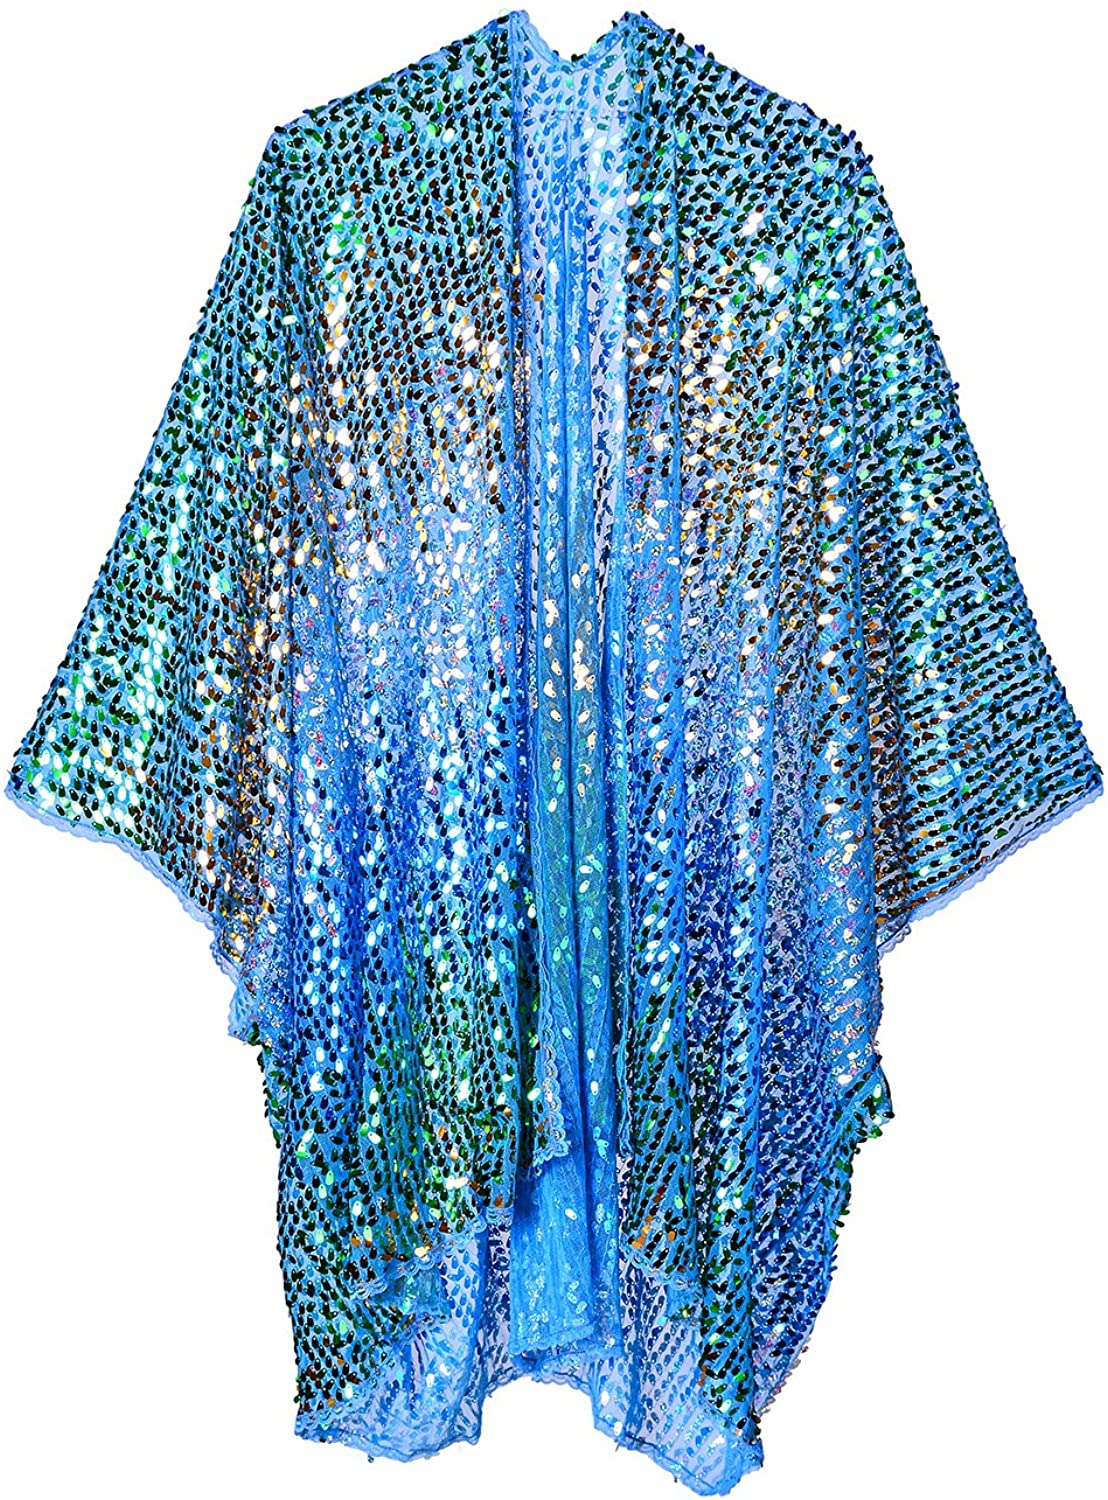 LUMi Shop Multicolor Sequin Kimono Colorful Cover-Up Wrap Holographic Festival Fashion Shawl